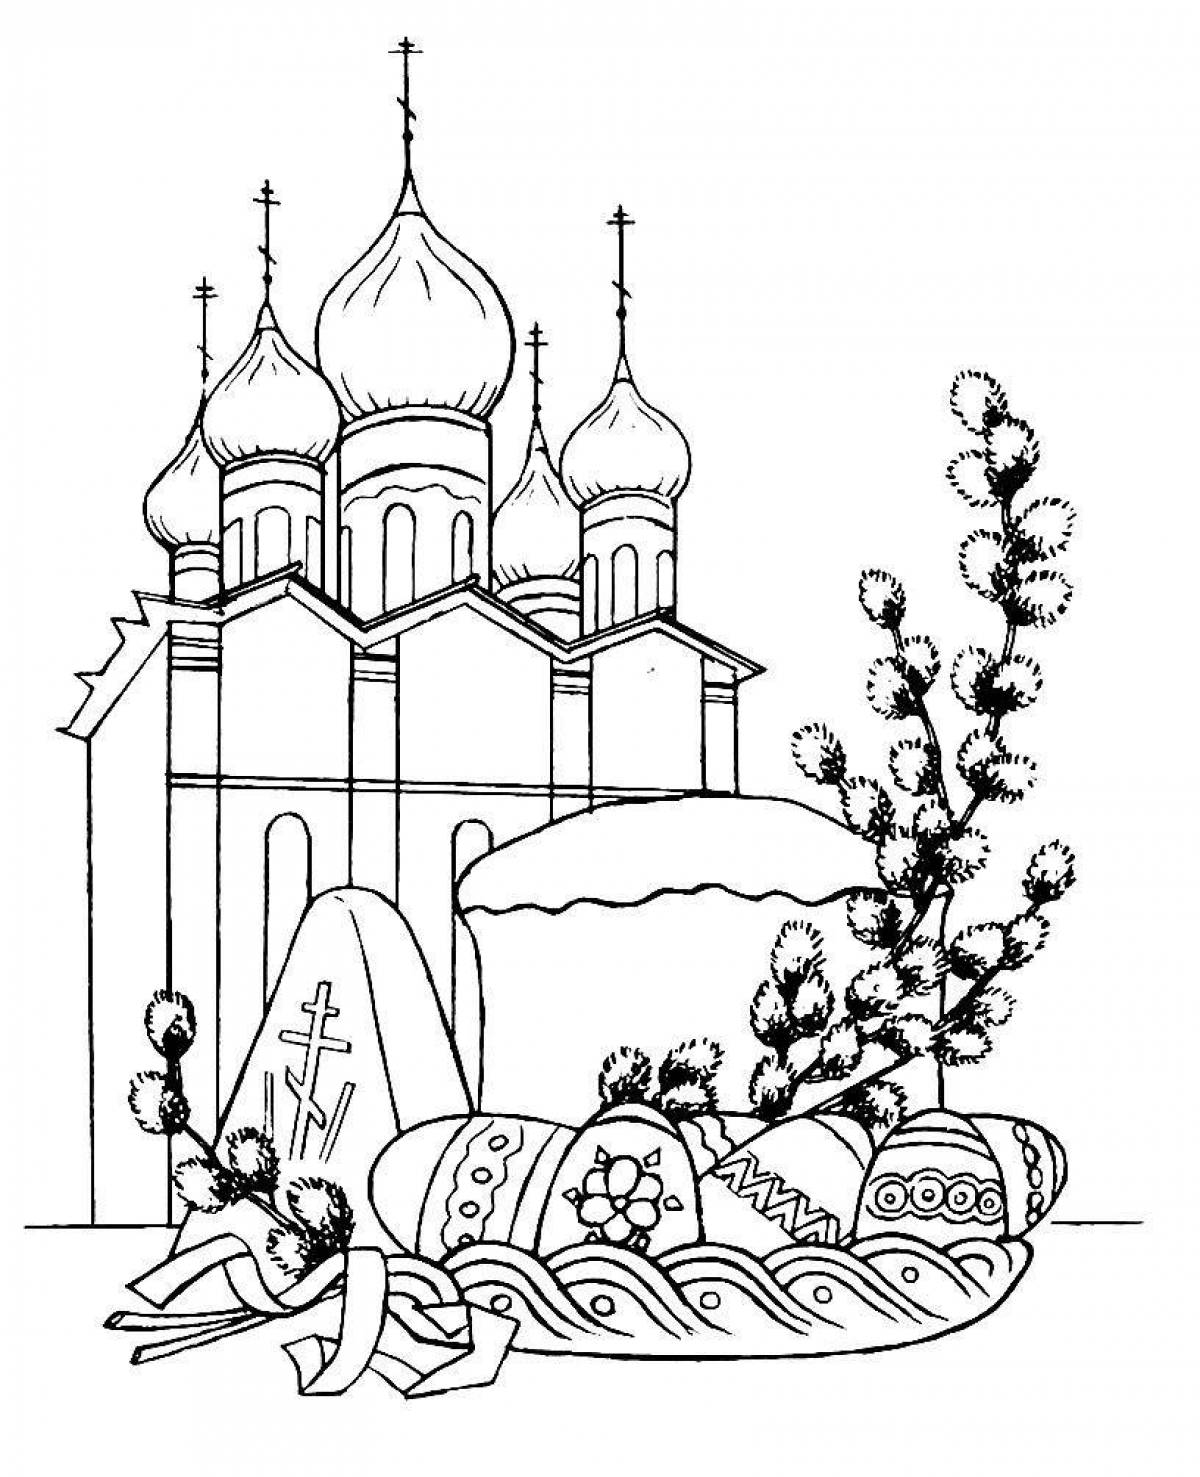 Exquisite Orthodox coloring book